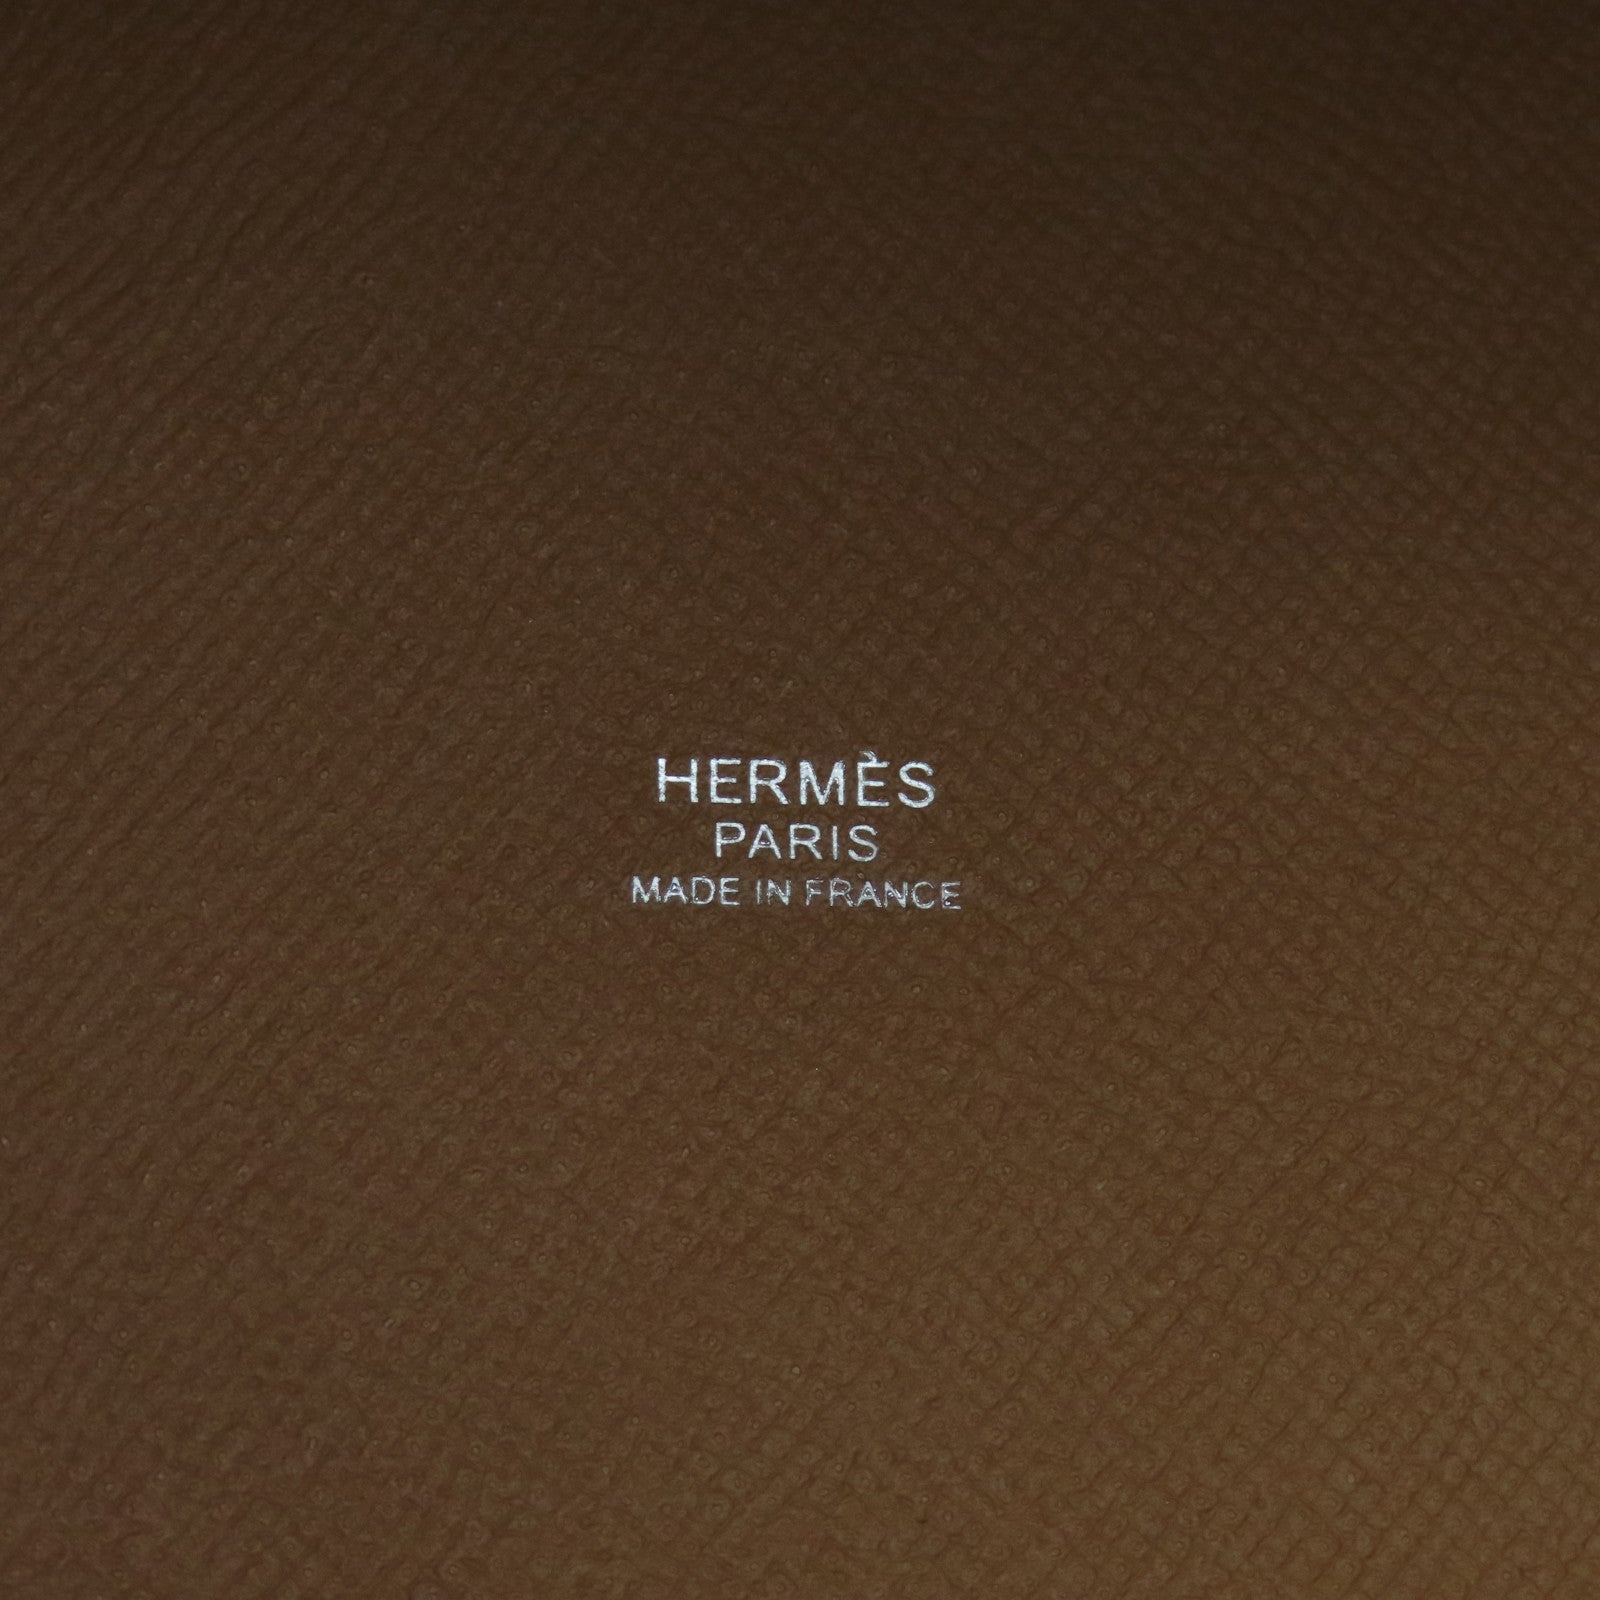 Hermès HD Wallpapers - Wallpaper Cave